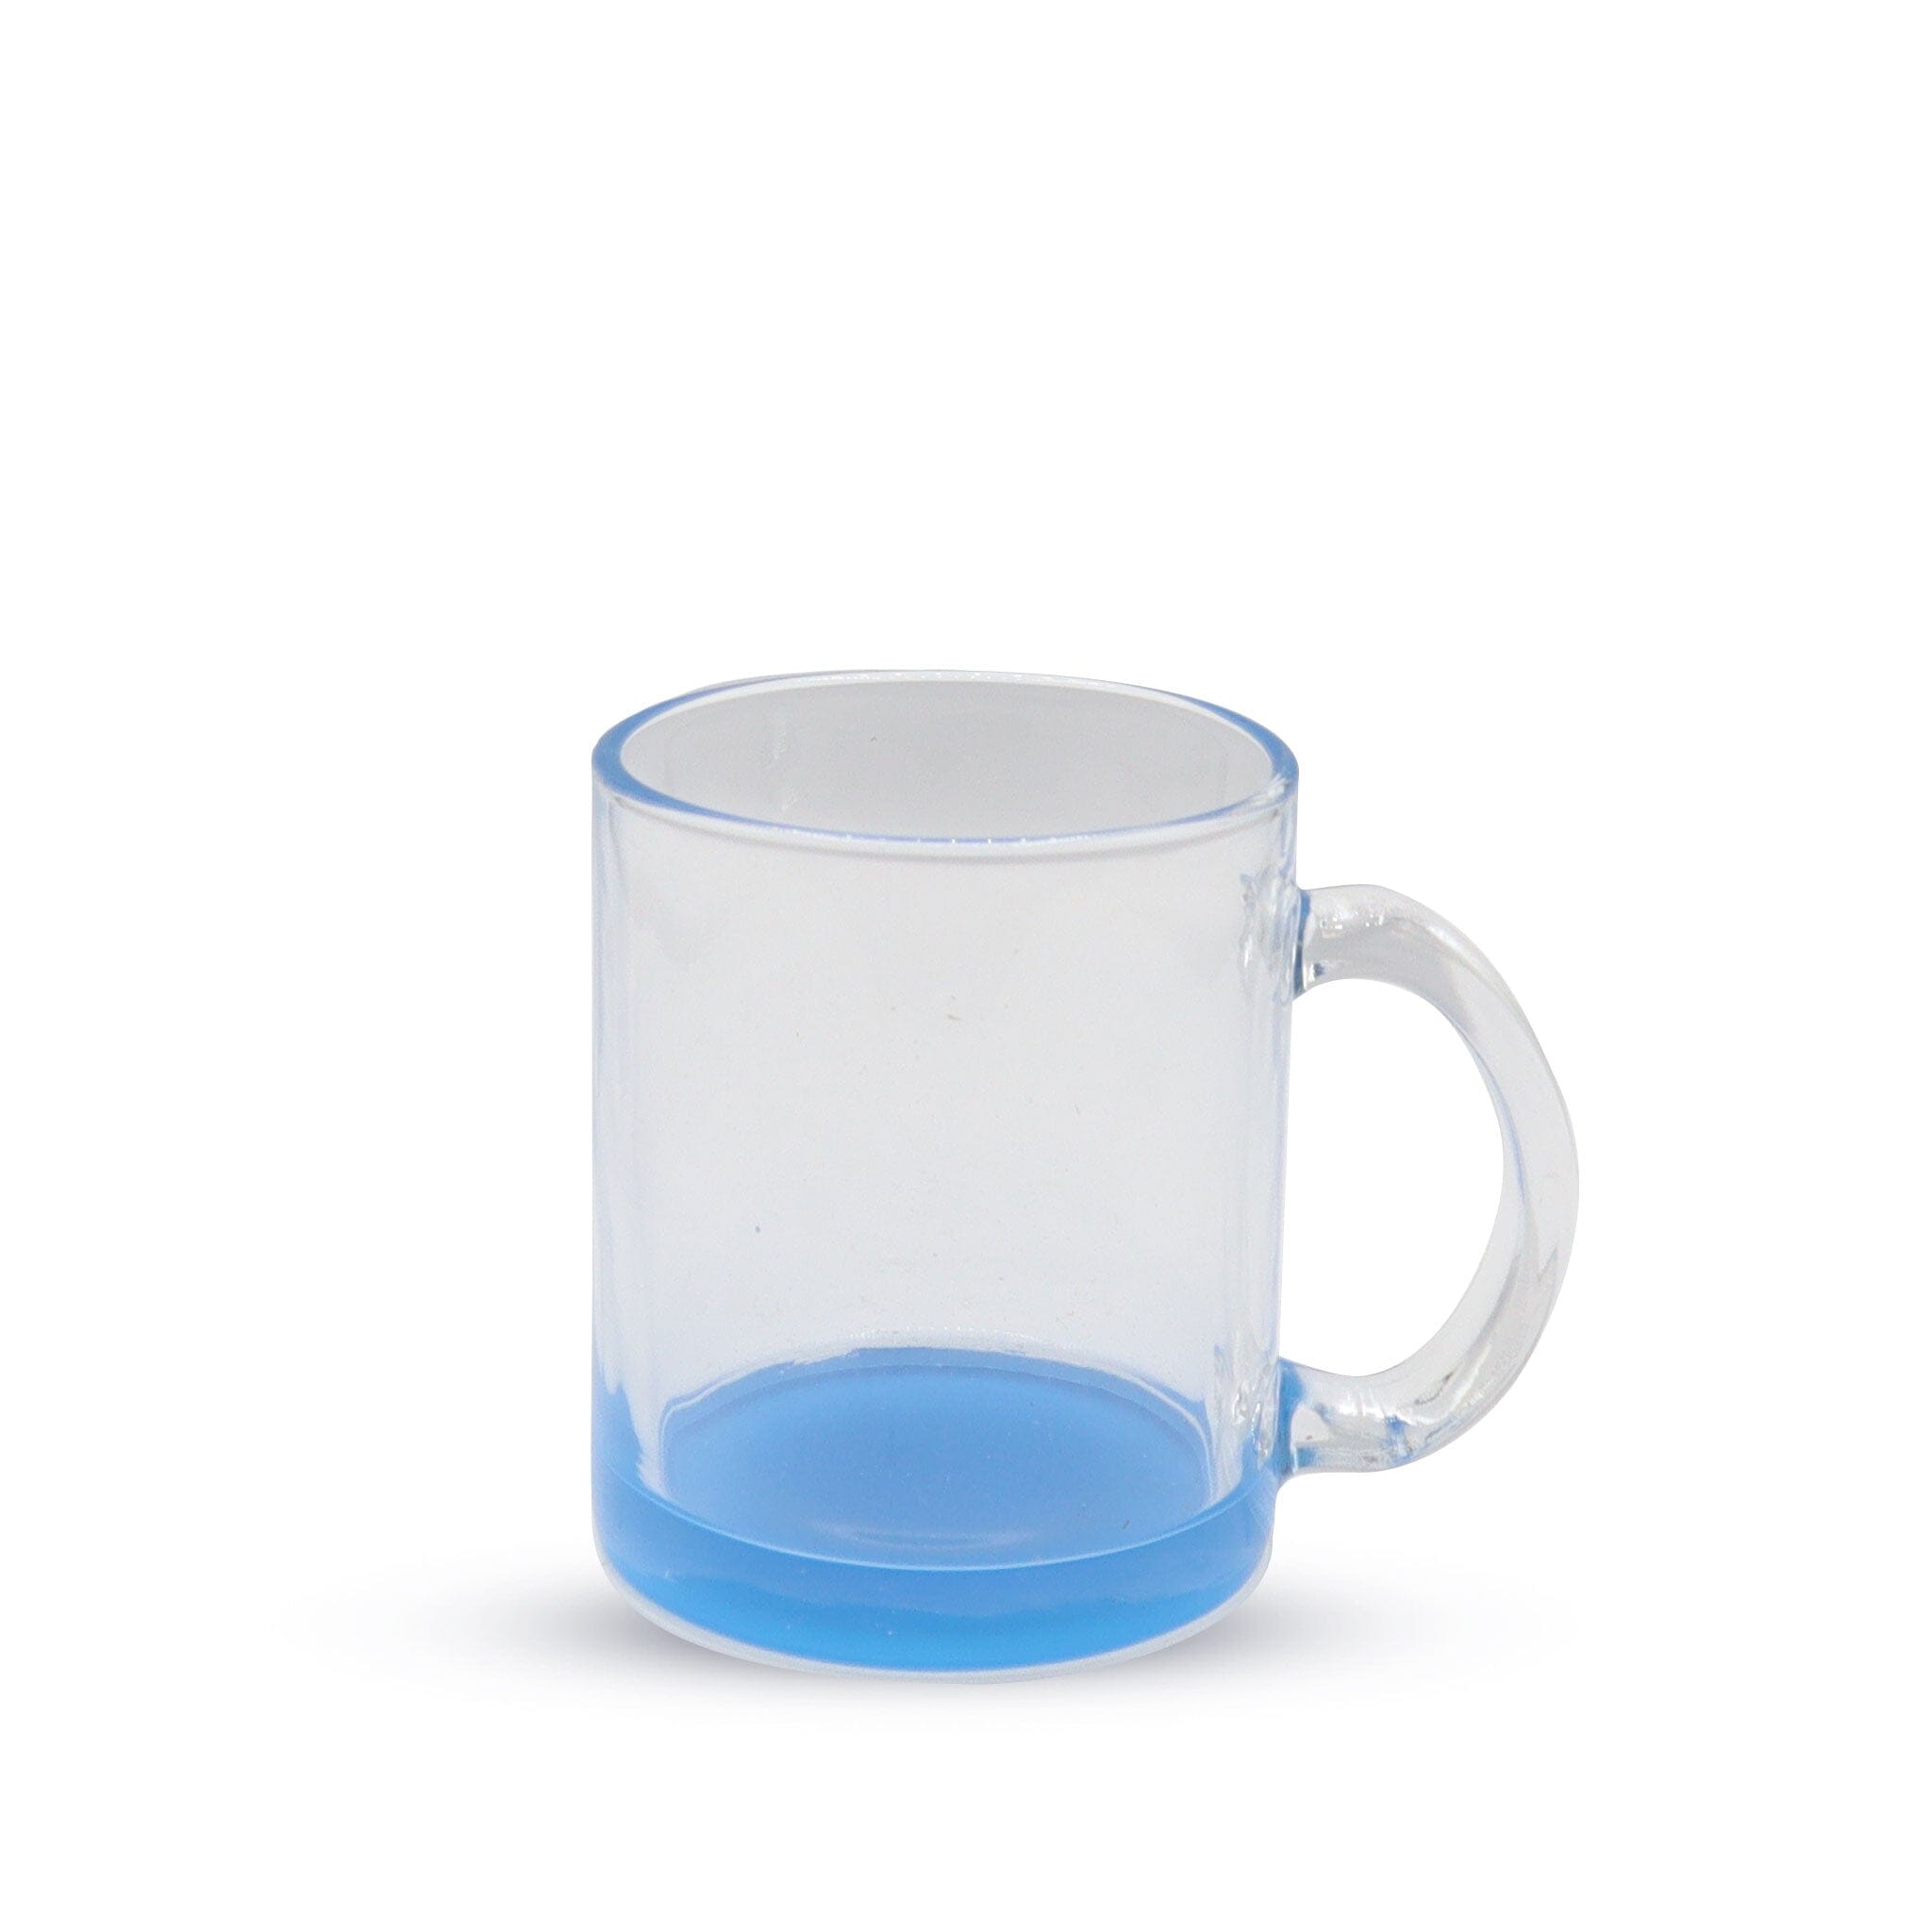 https://www.kupresso.com/cdn/shop/products/11oz-sublimation-glass-camper-mug-clear-kupresso-blue-205814.jpg?v=1696255311